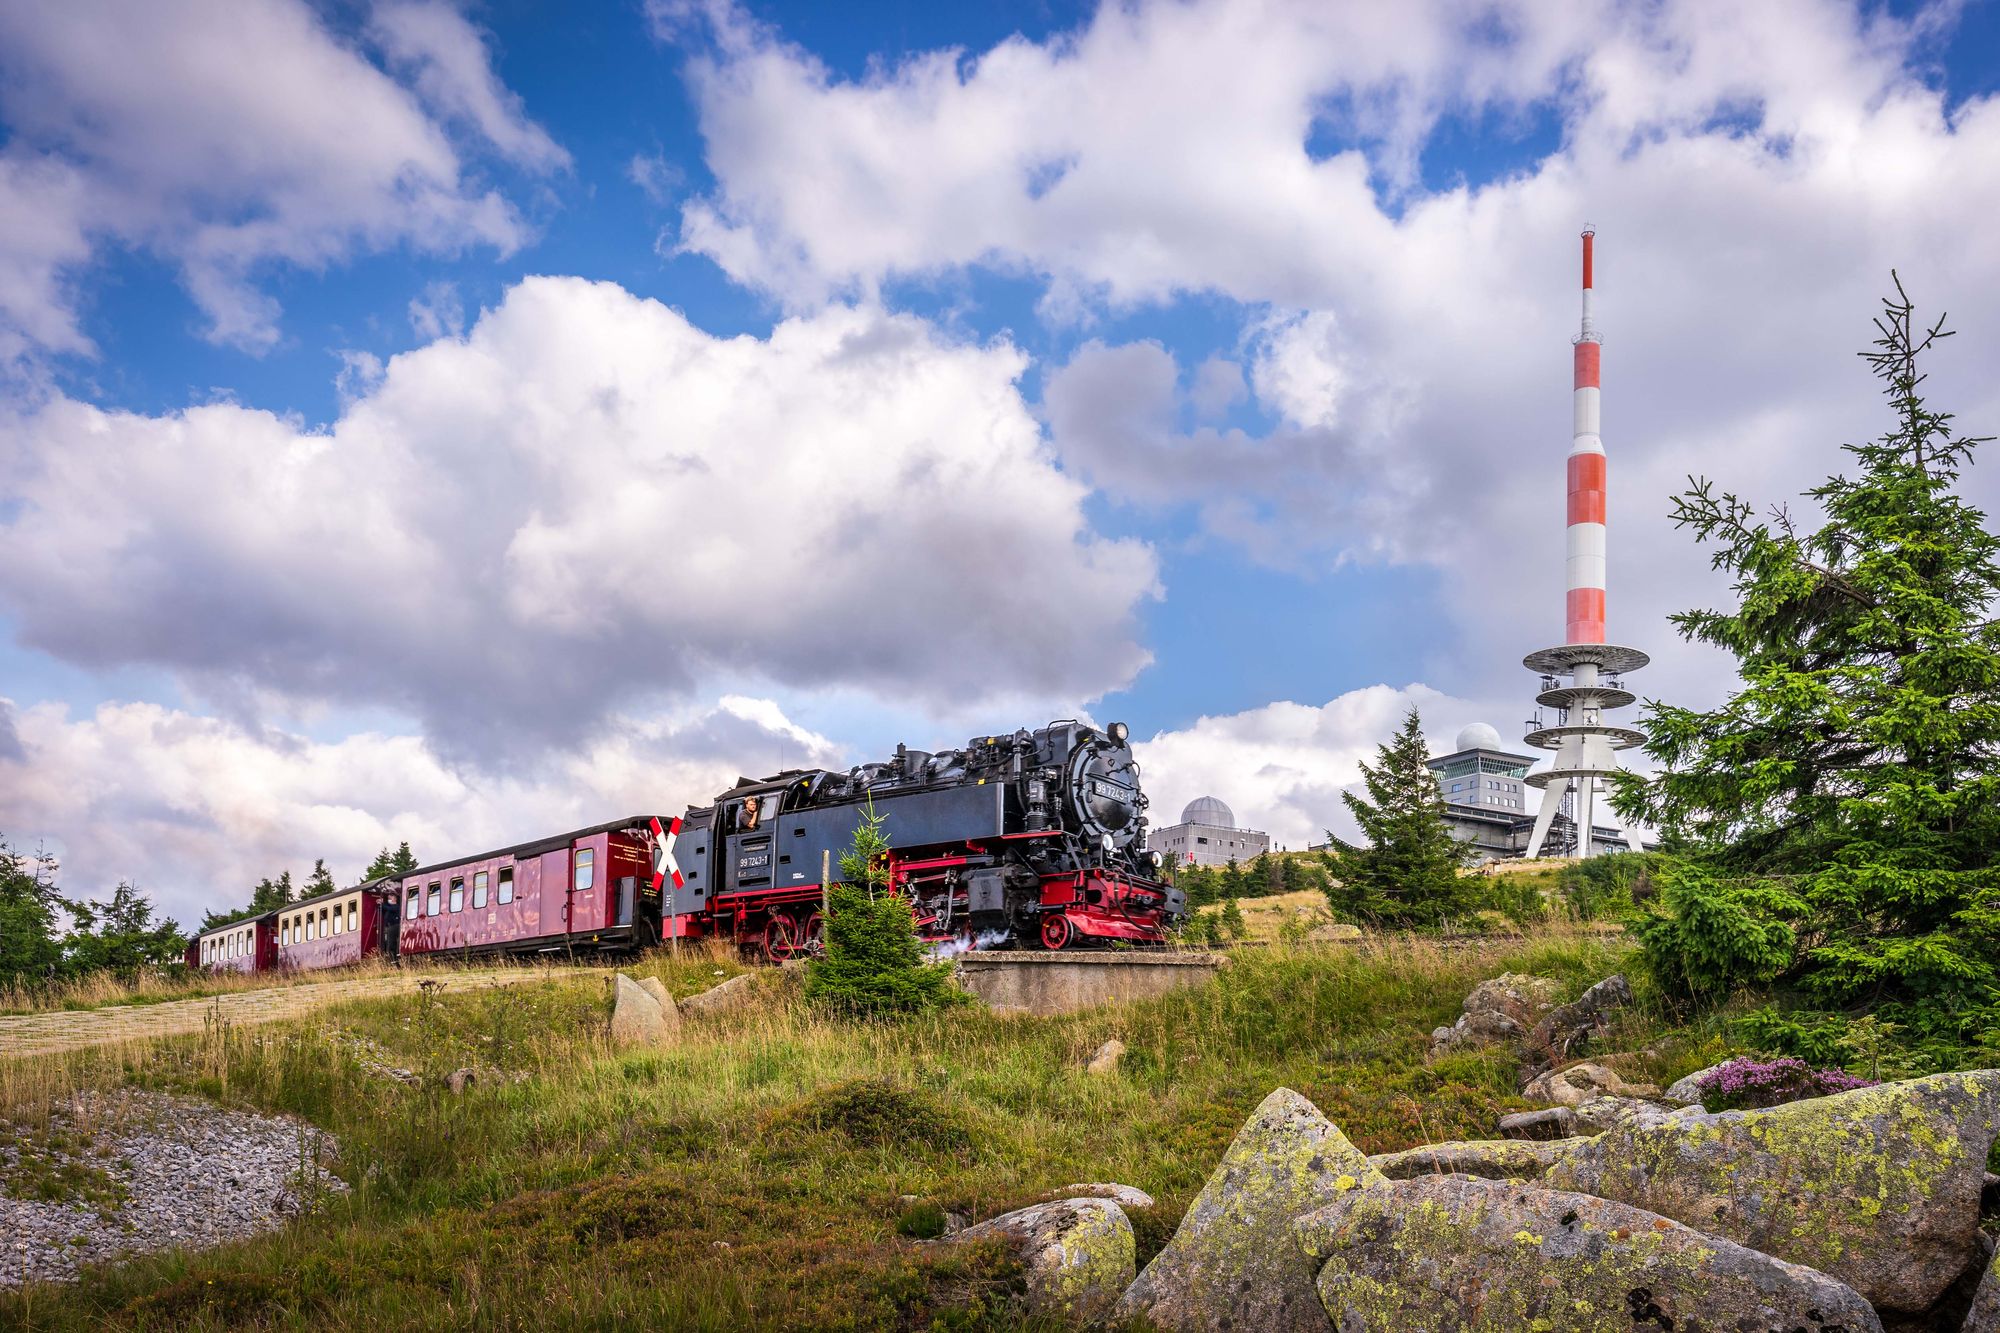 Harzer Schmalspurbahnen GmbH - Unsere Brockenbahn auf dem Gipfel!<br>(Quelle: Sammlung HSB / Dirk Bahnsen)